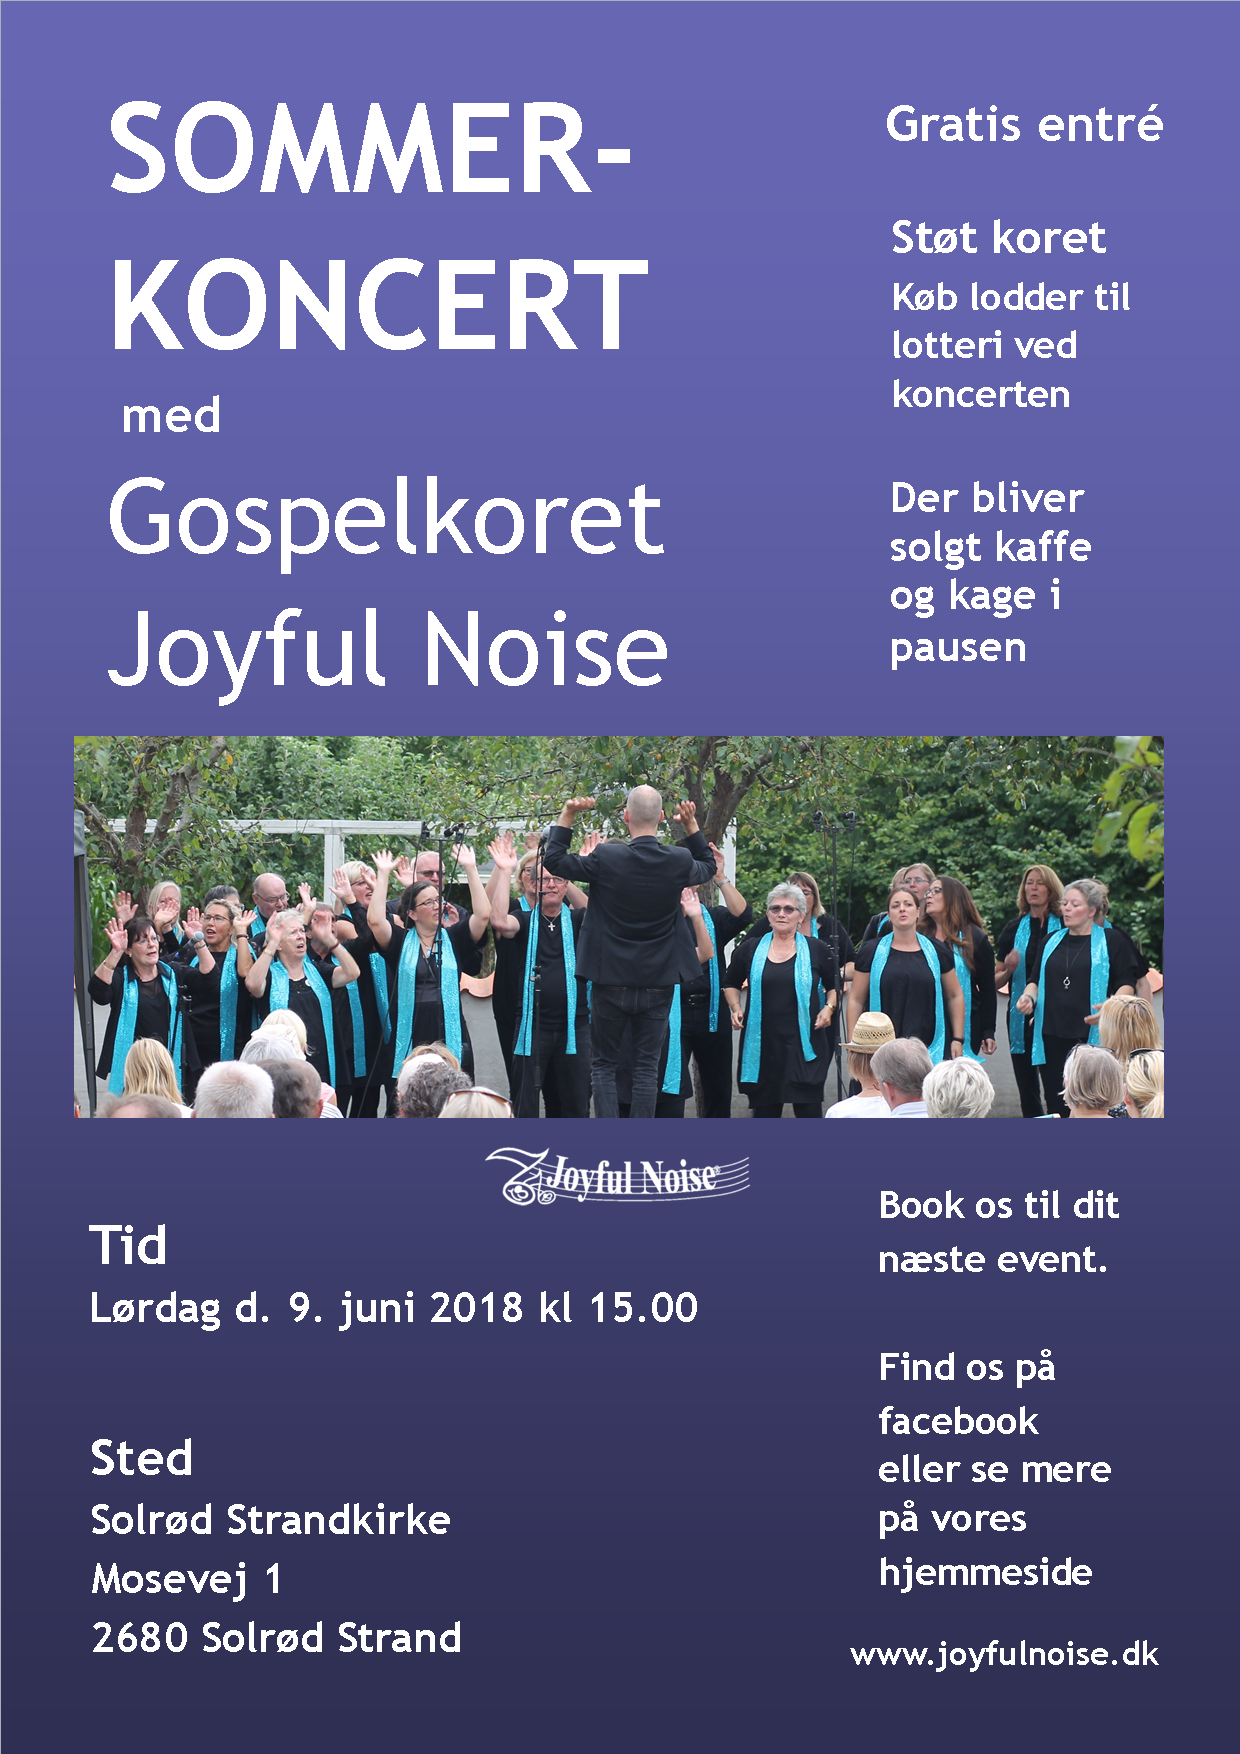 Plakat til Joyful Noise sommerkoncert 2018